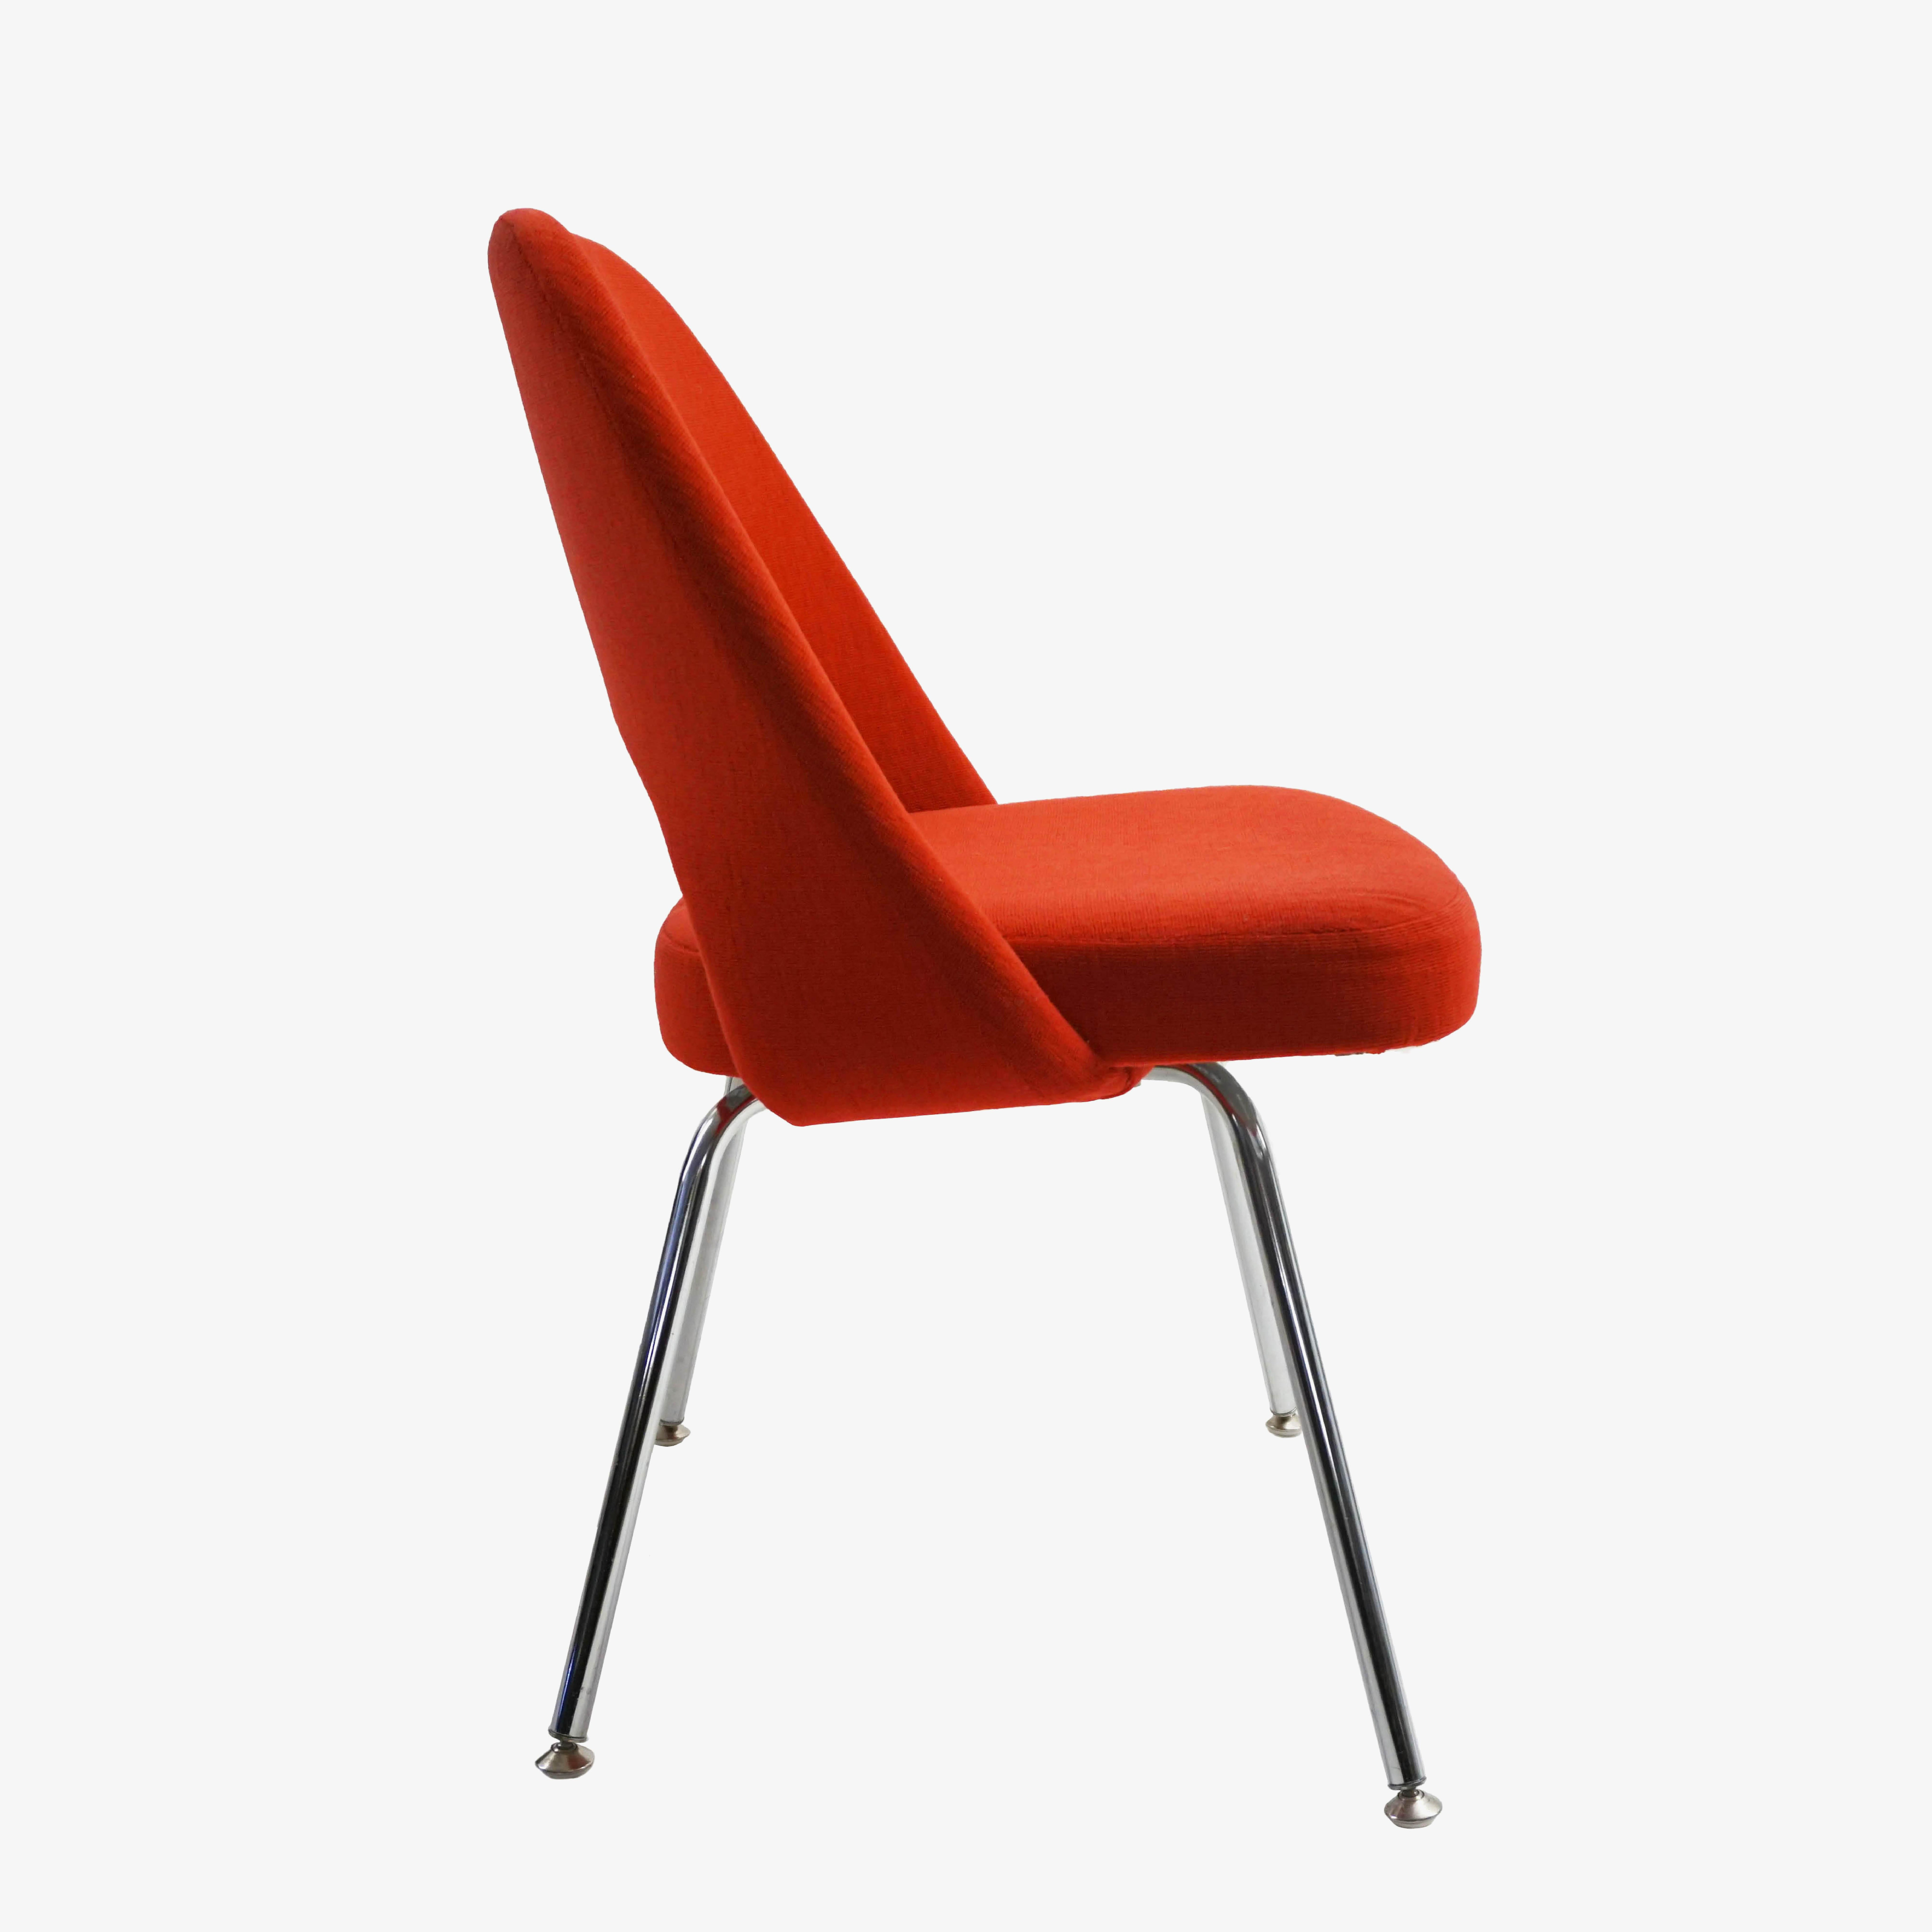 Mid-Century Modern Saarinen Executive Armless Chair in Fire Red Fabric, Chrome Tubular Legs